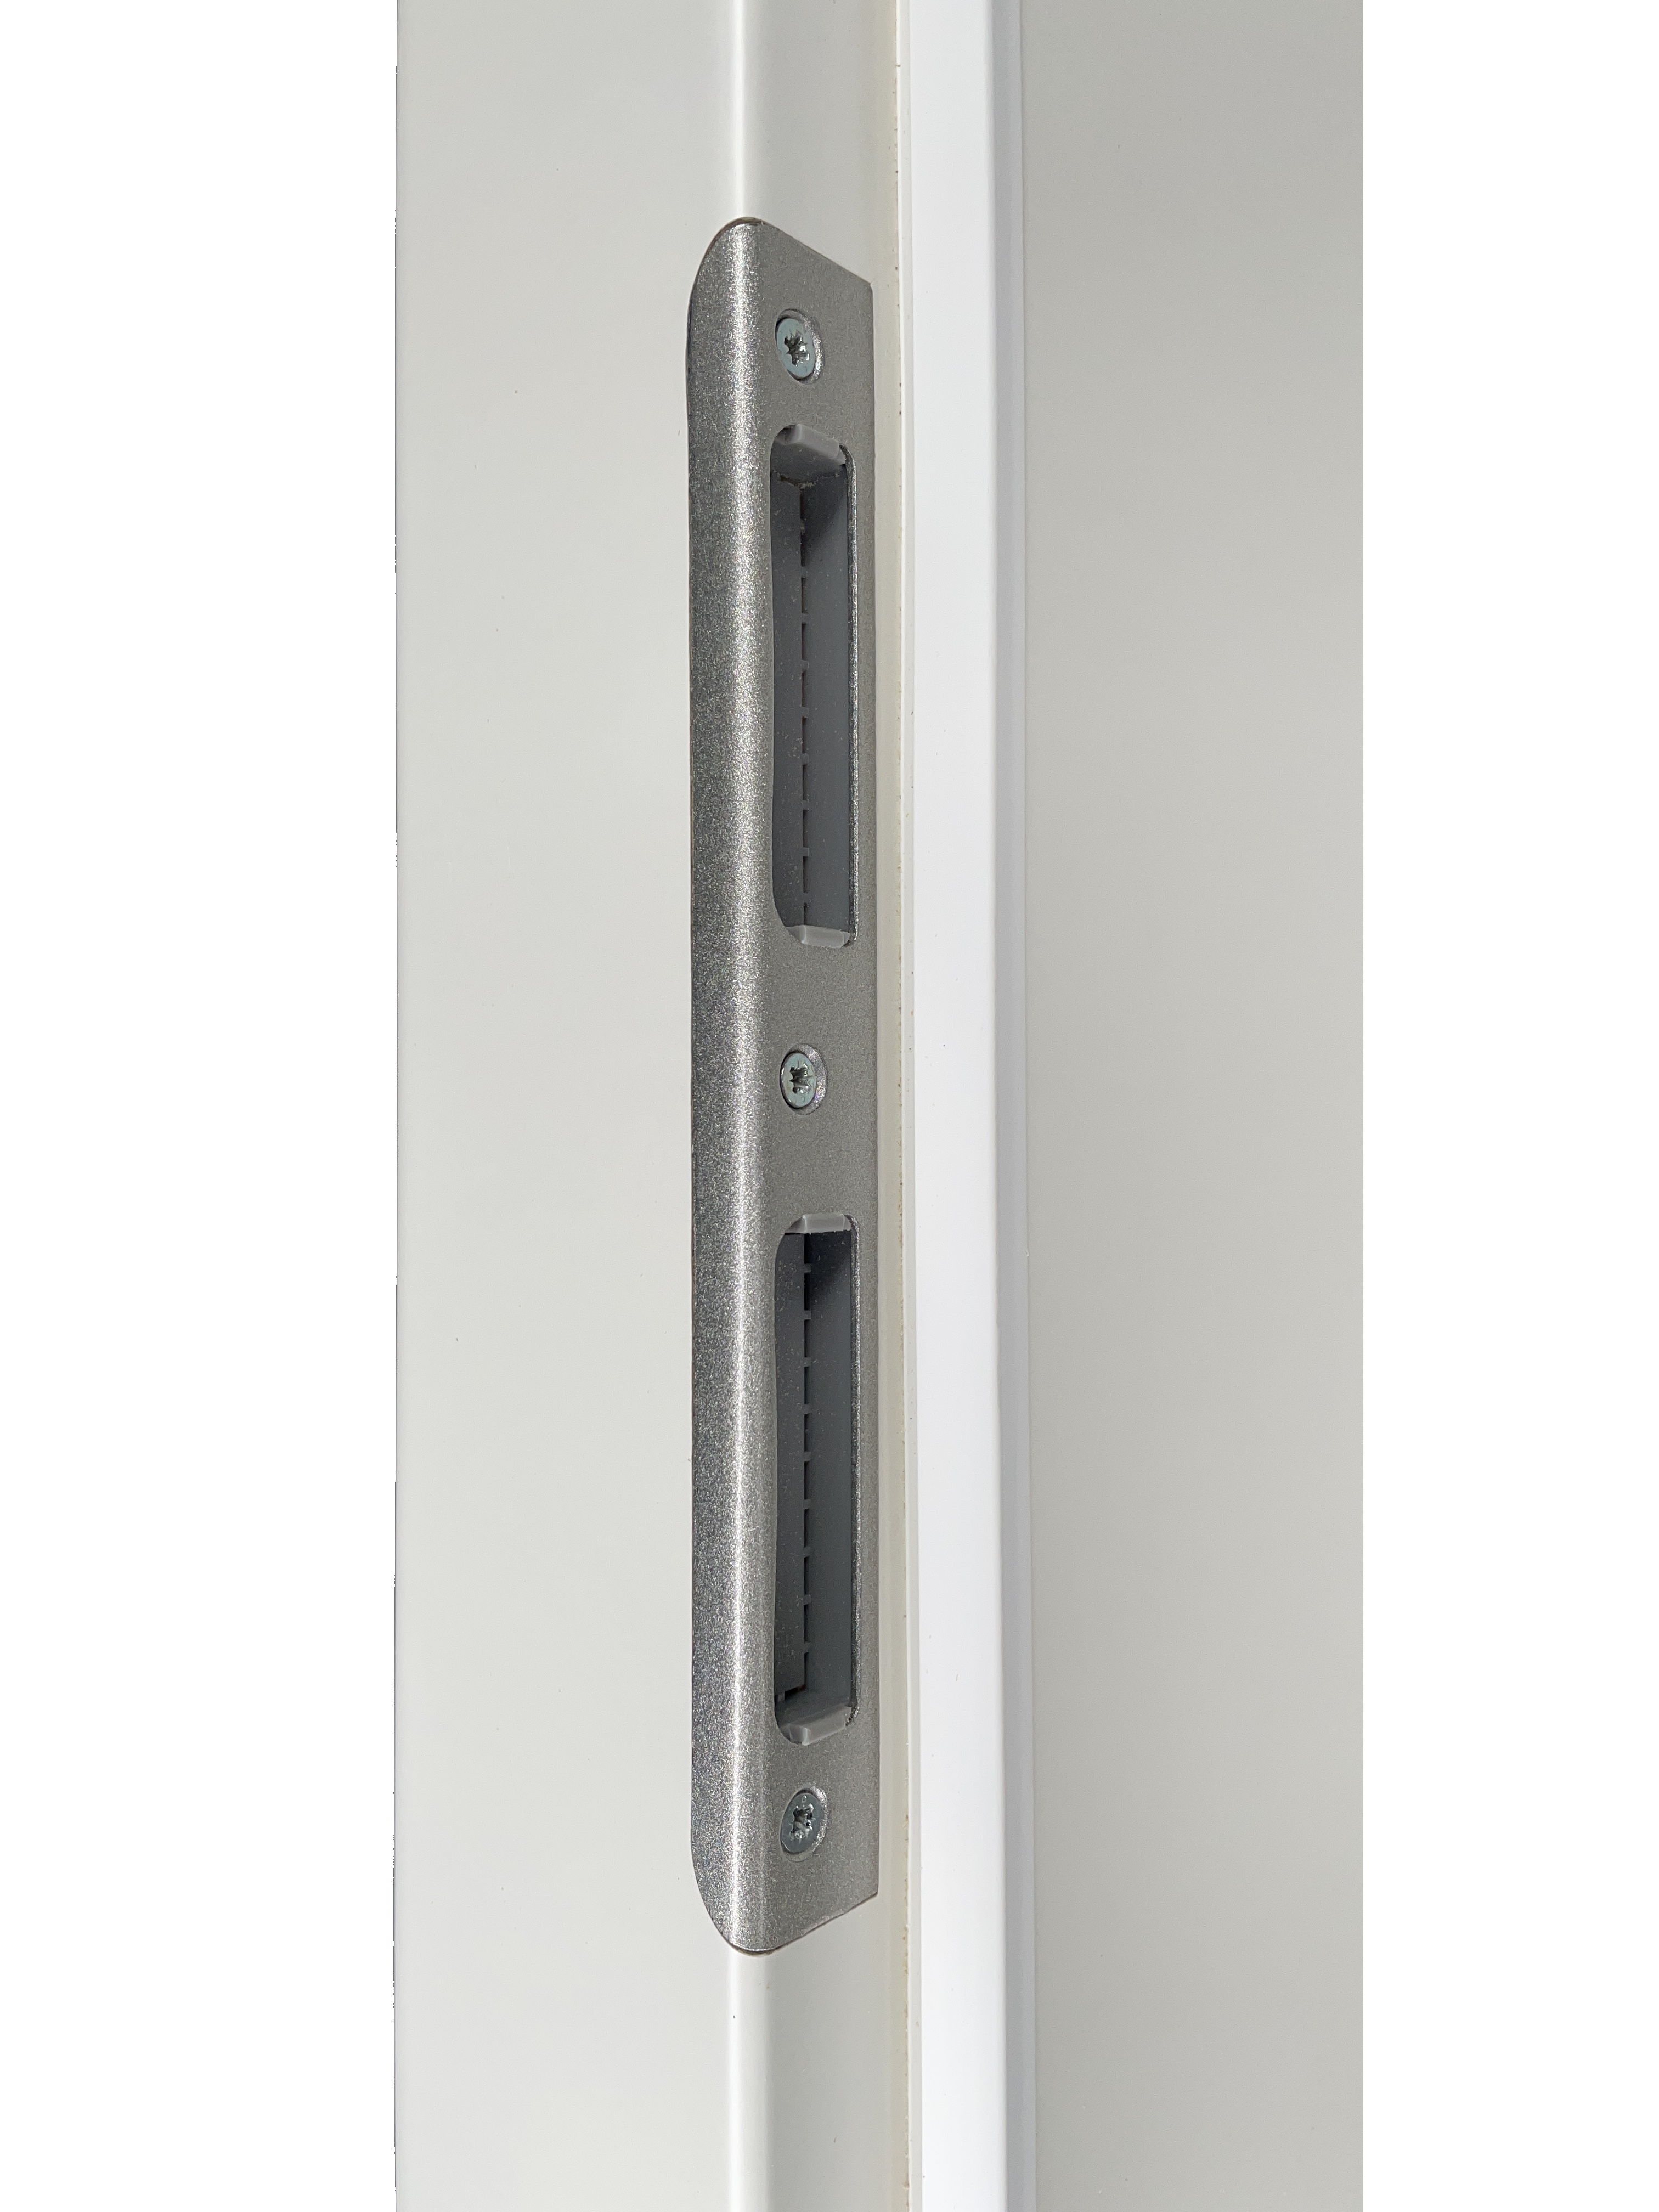 Zimmertür mit Zarge und Lichtausschnitt mit Sprossenrahmen soft-weiß 2 Kassetten Rundkante - Modell Stiltür K21LASPO